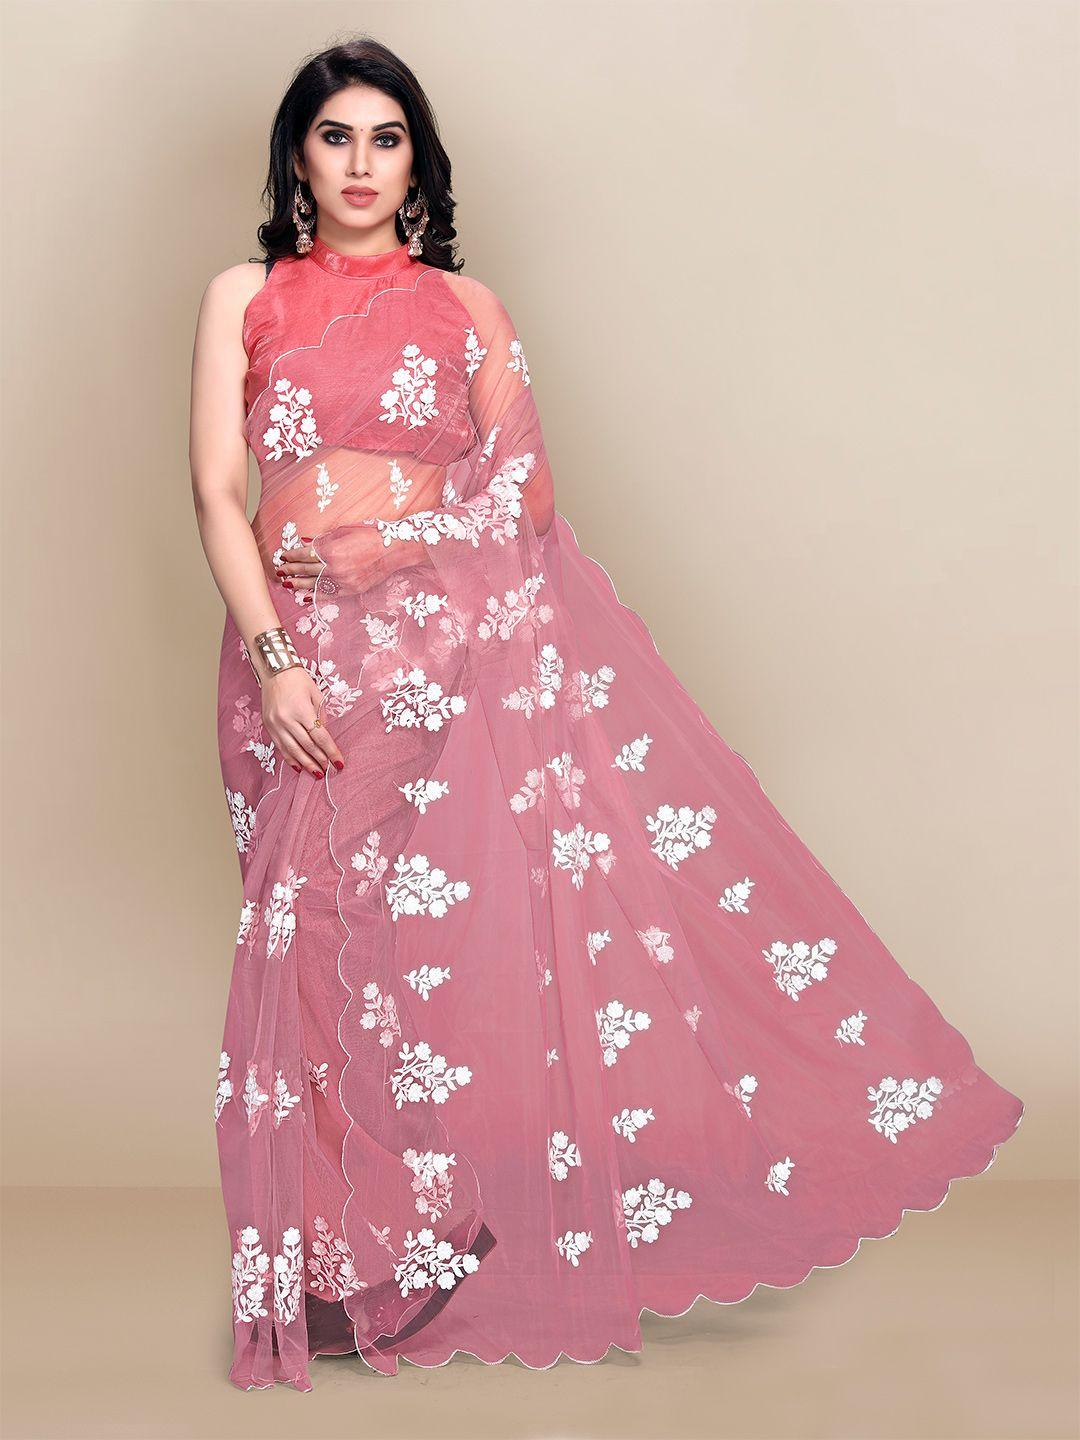 vairagee pink & white floral net saree